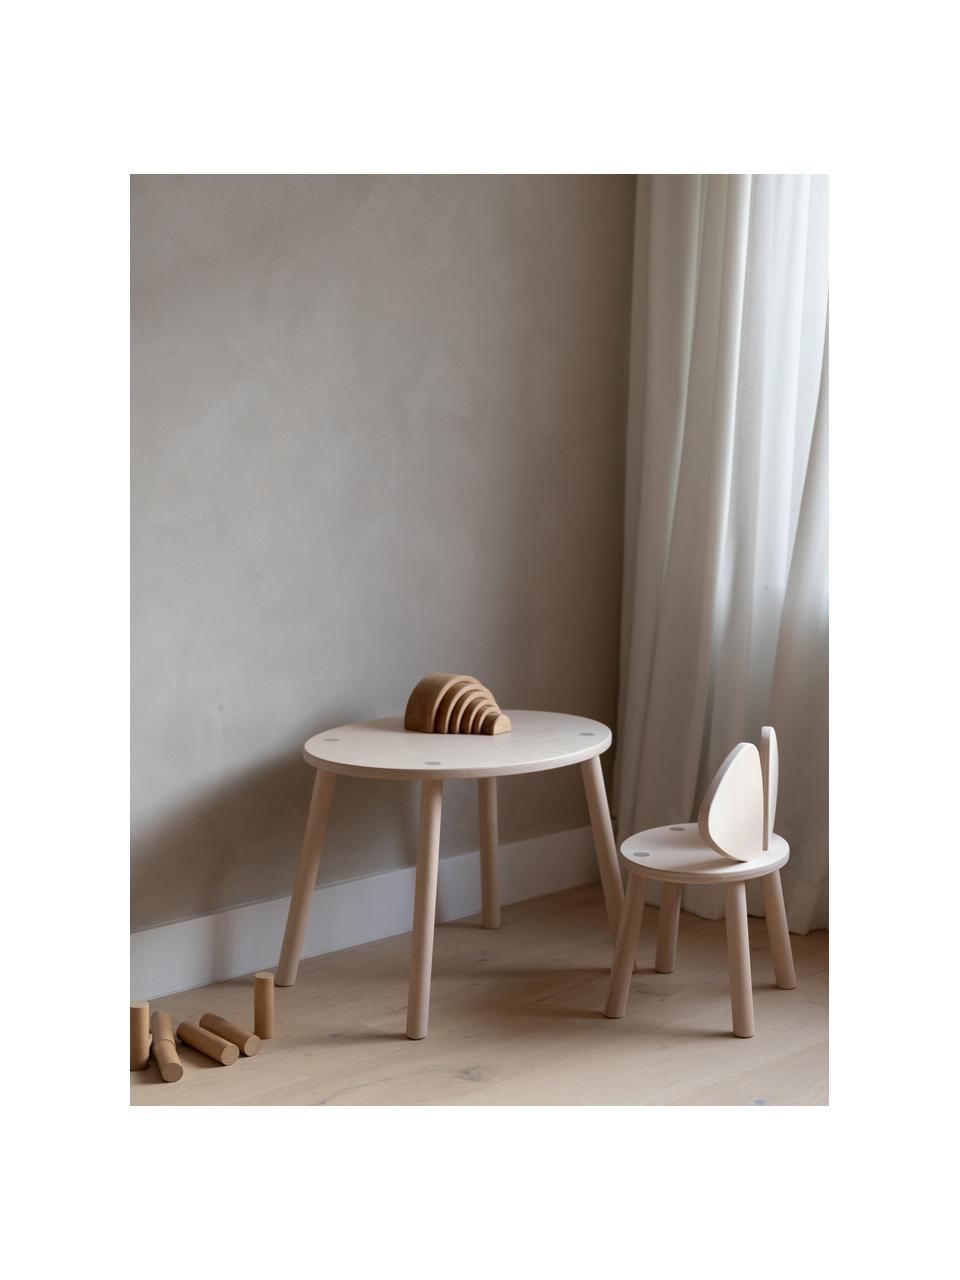 Komplet stolika dziecięcego z krzesłem z drewna brzozowego Mouse, 2 elem., Fornir brzozowy

Ten produkt jest wykonany z drewna pochodzącego ze zrównoważonych upraw, które posiada certyfikat FSC®., Drewno brzozowe, Komplet z różnymi rozmiarami